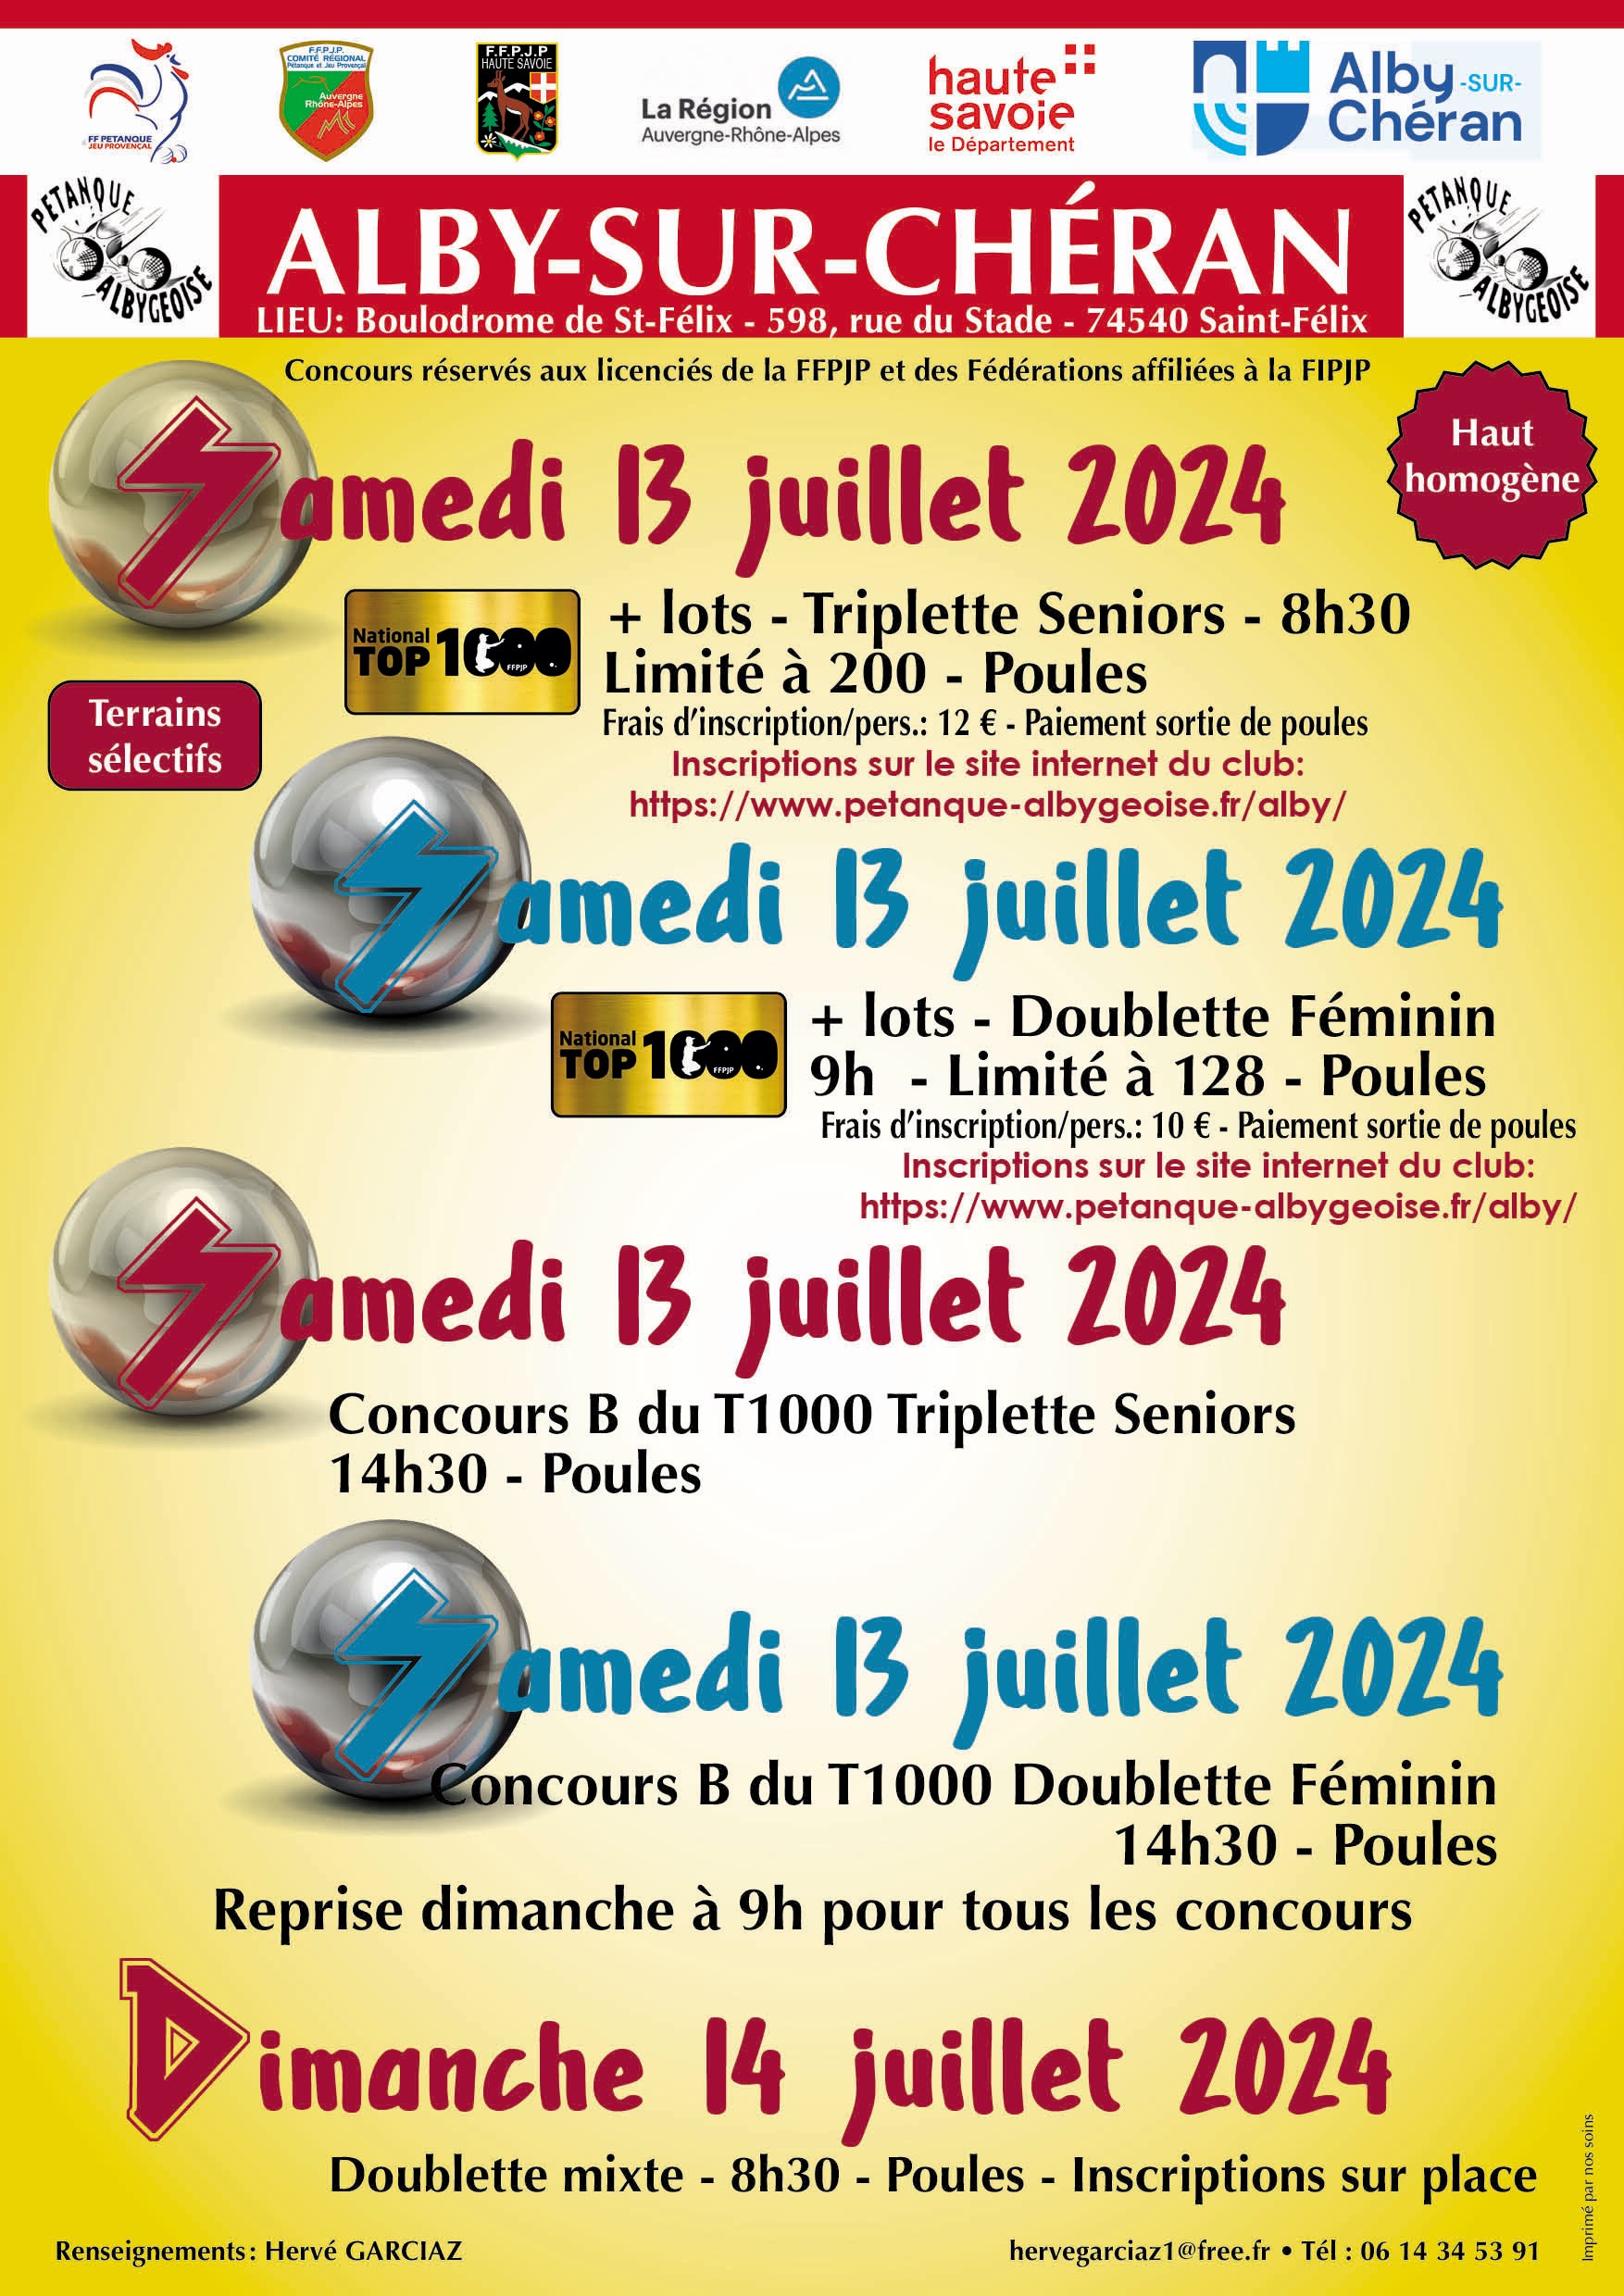 Concours en Triplette le 13 juillet 2024 - Alby-sur-Chéran - 74540